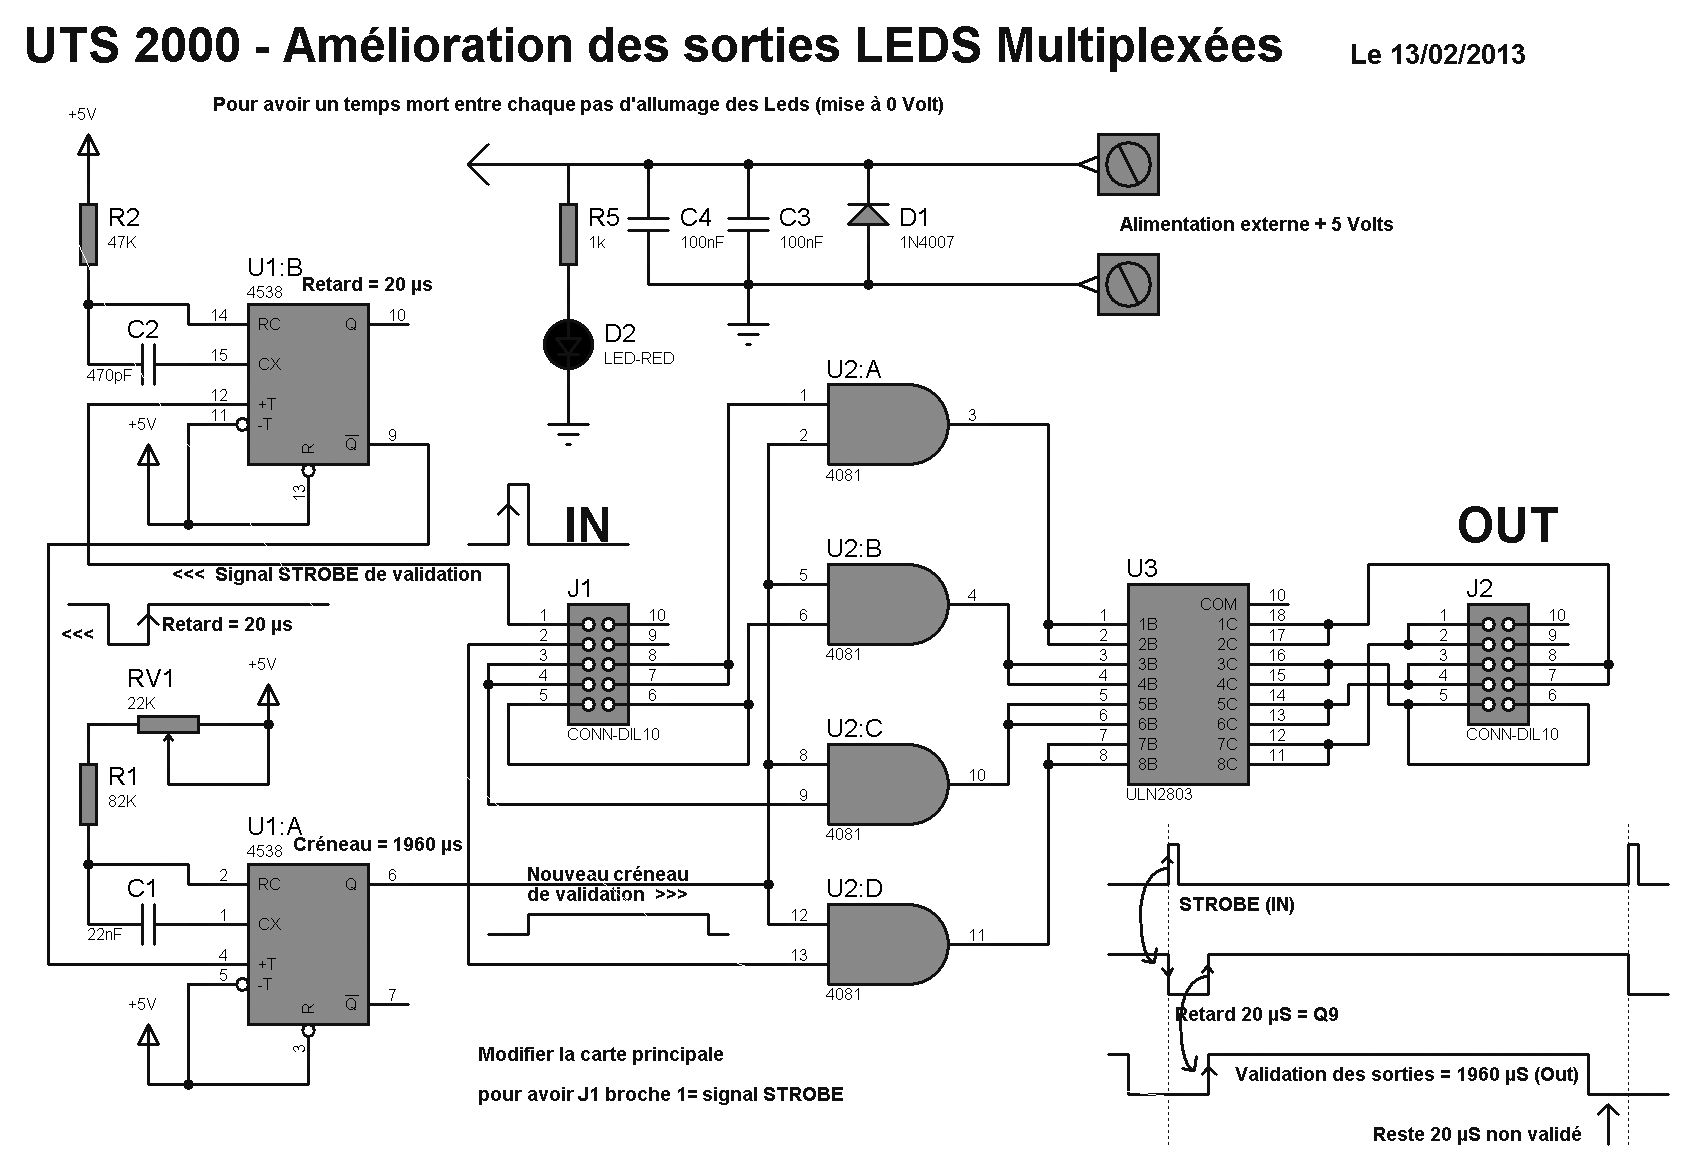 amelioration led mux